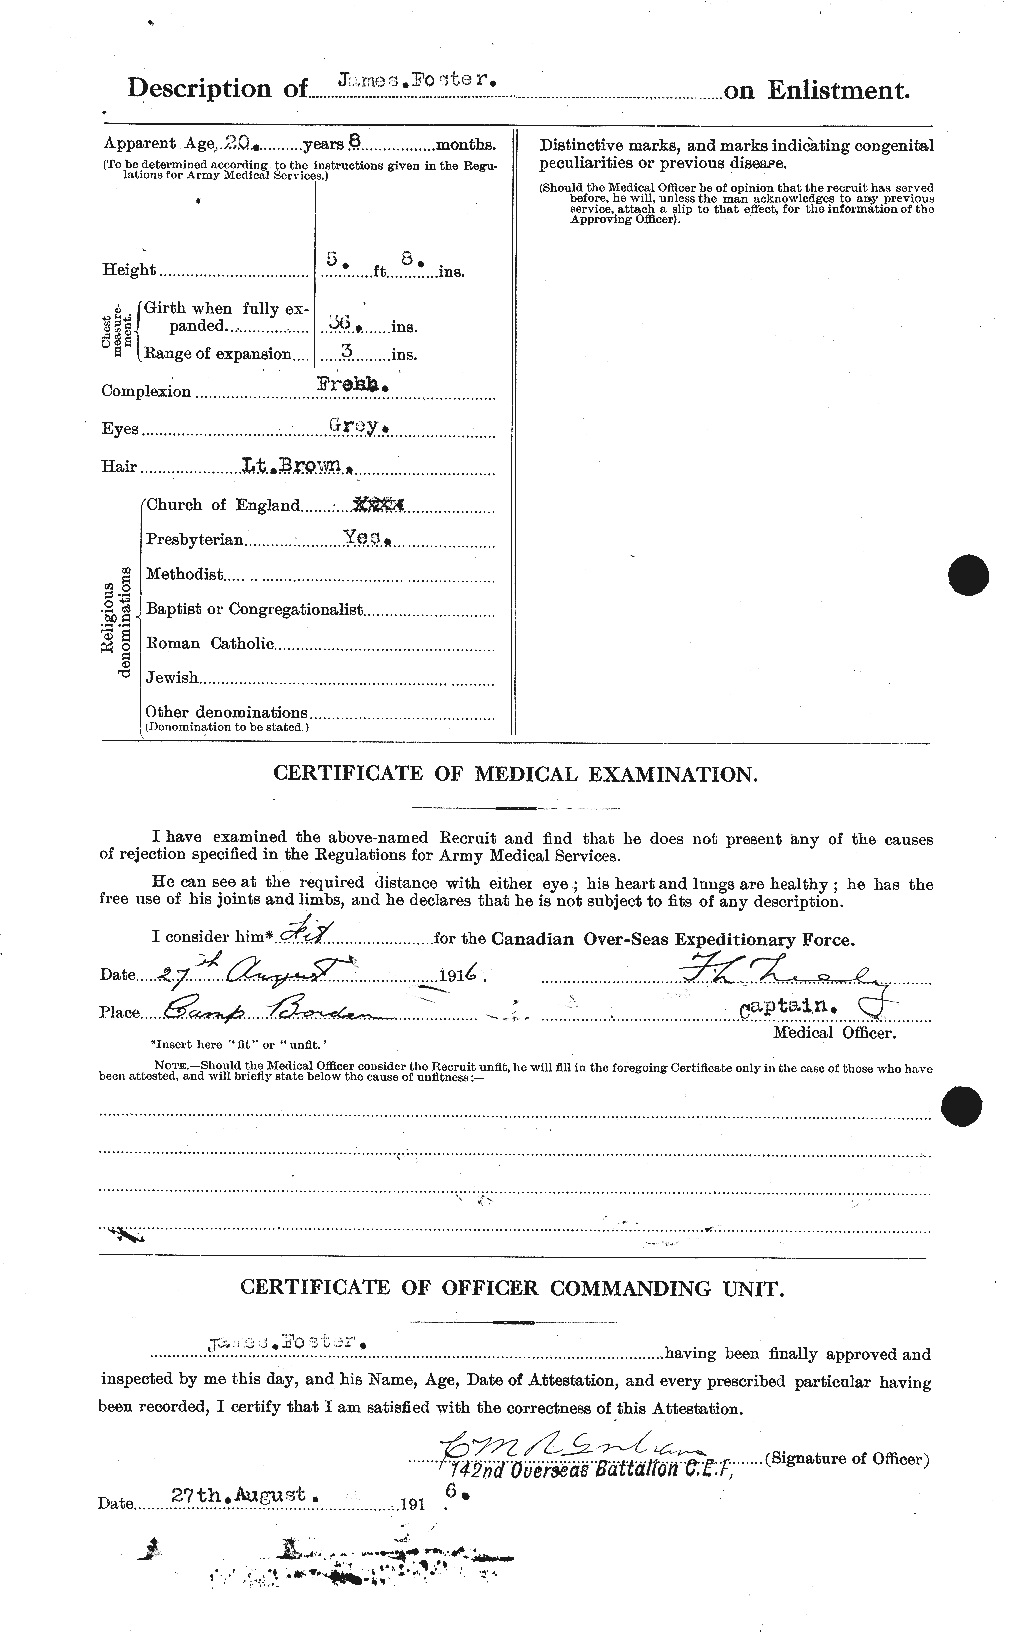 Dossiers du Personnel de la Première Guerre mondiale - CEC 333292b